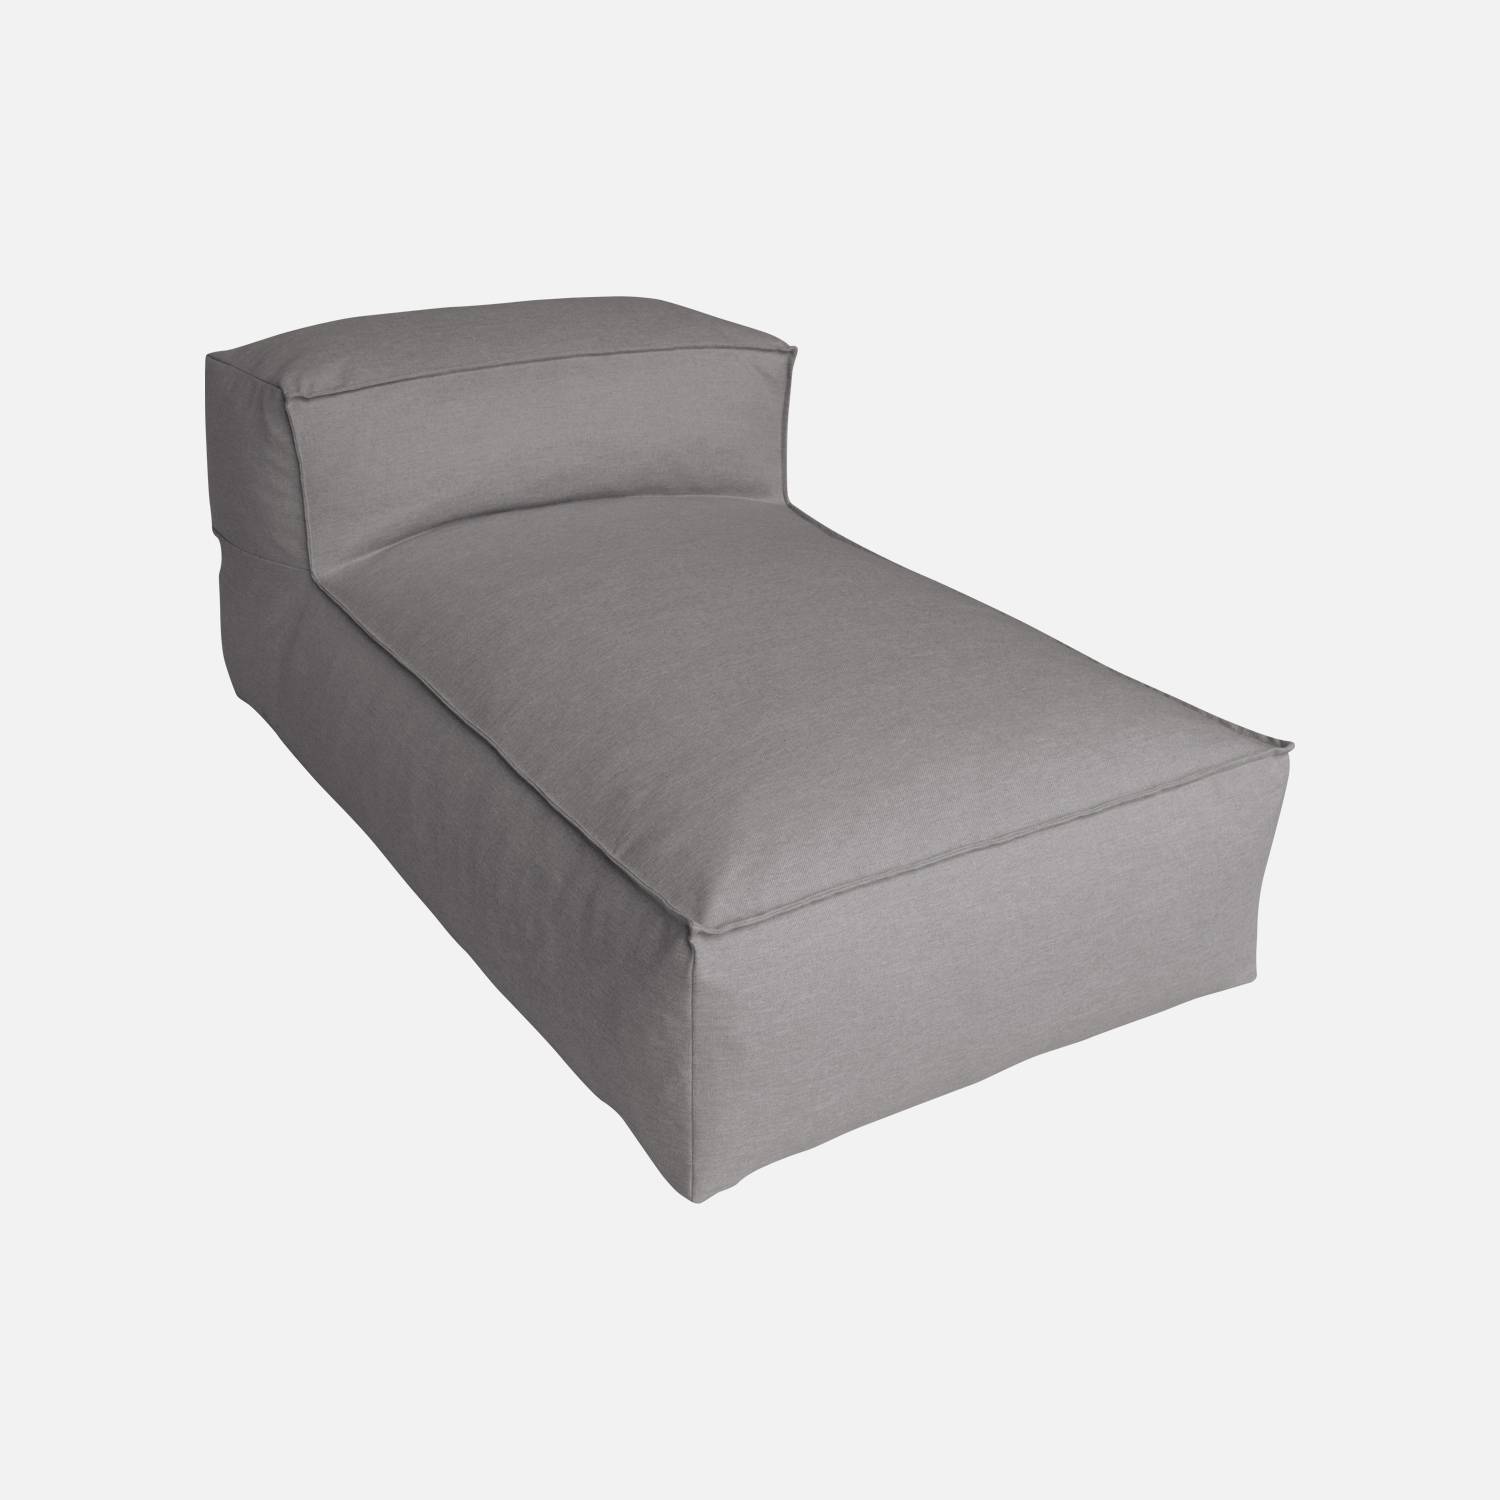 Chaise longue gris, módulo para sofá de jardín I sweeek